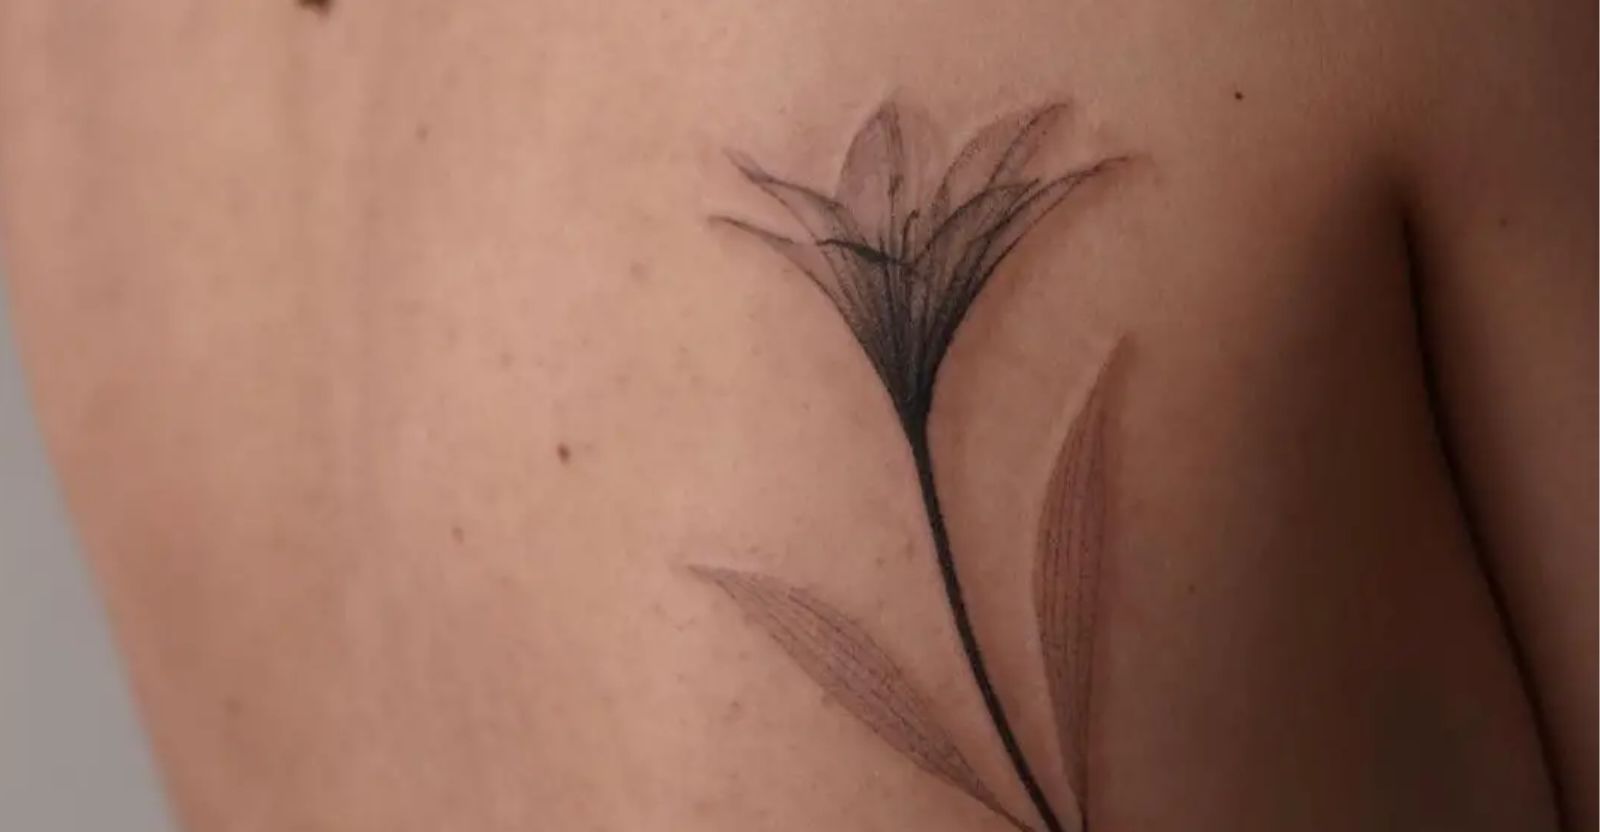 lily flower tattoo ideas 1